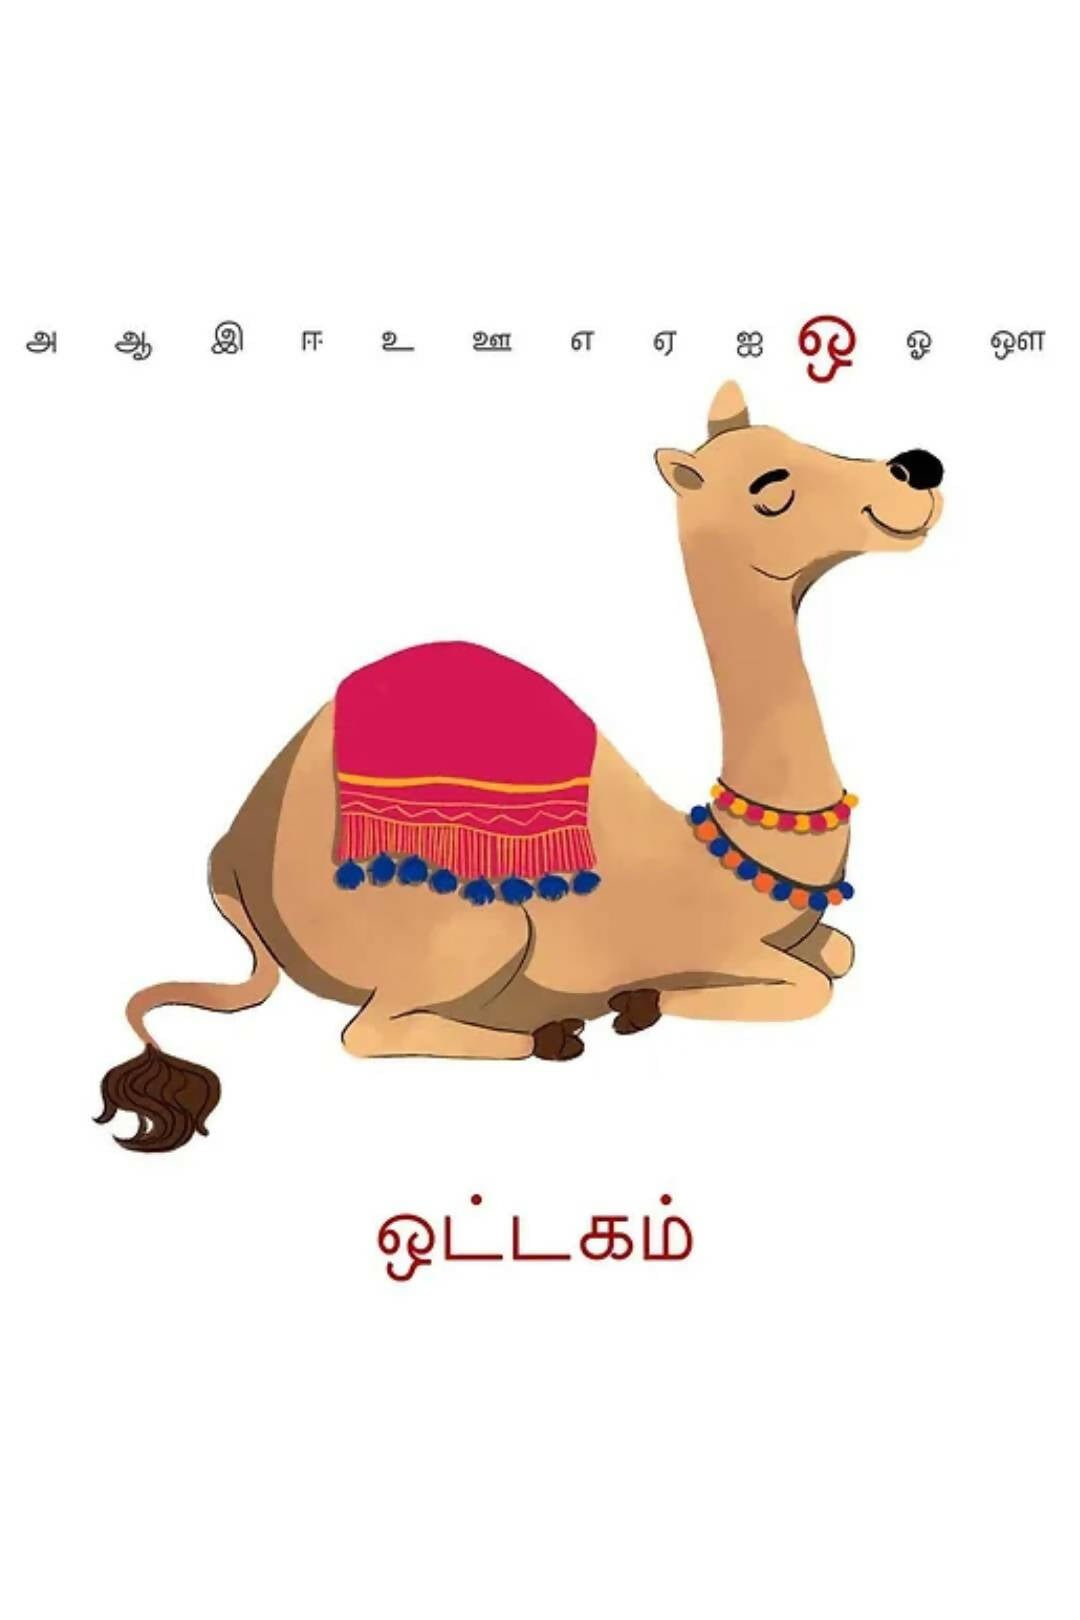 உரையாடு - தமிழ் உயிர் எழுத்துக்கள் (Tamil Vowels Board Book) -2